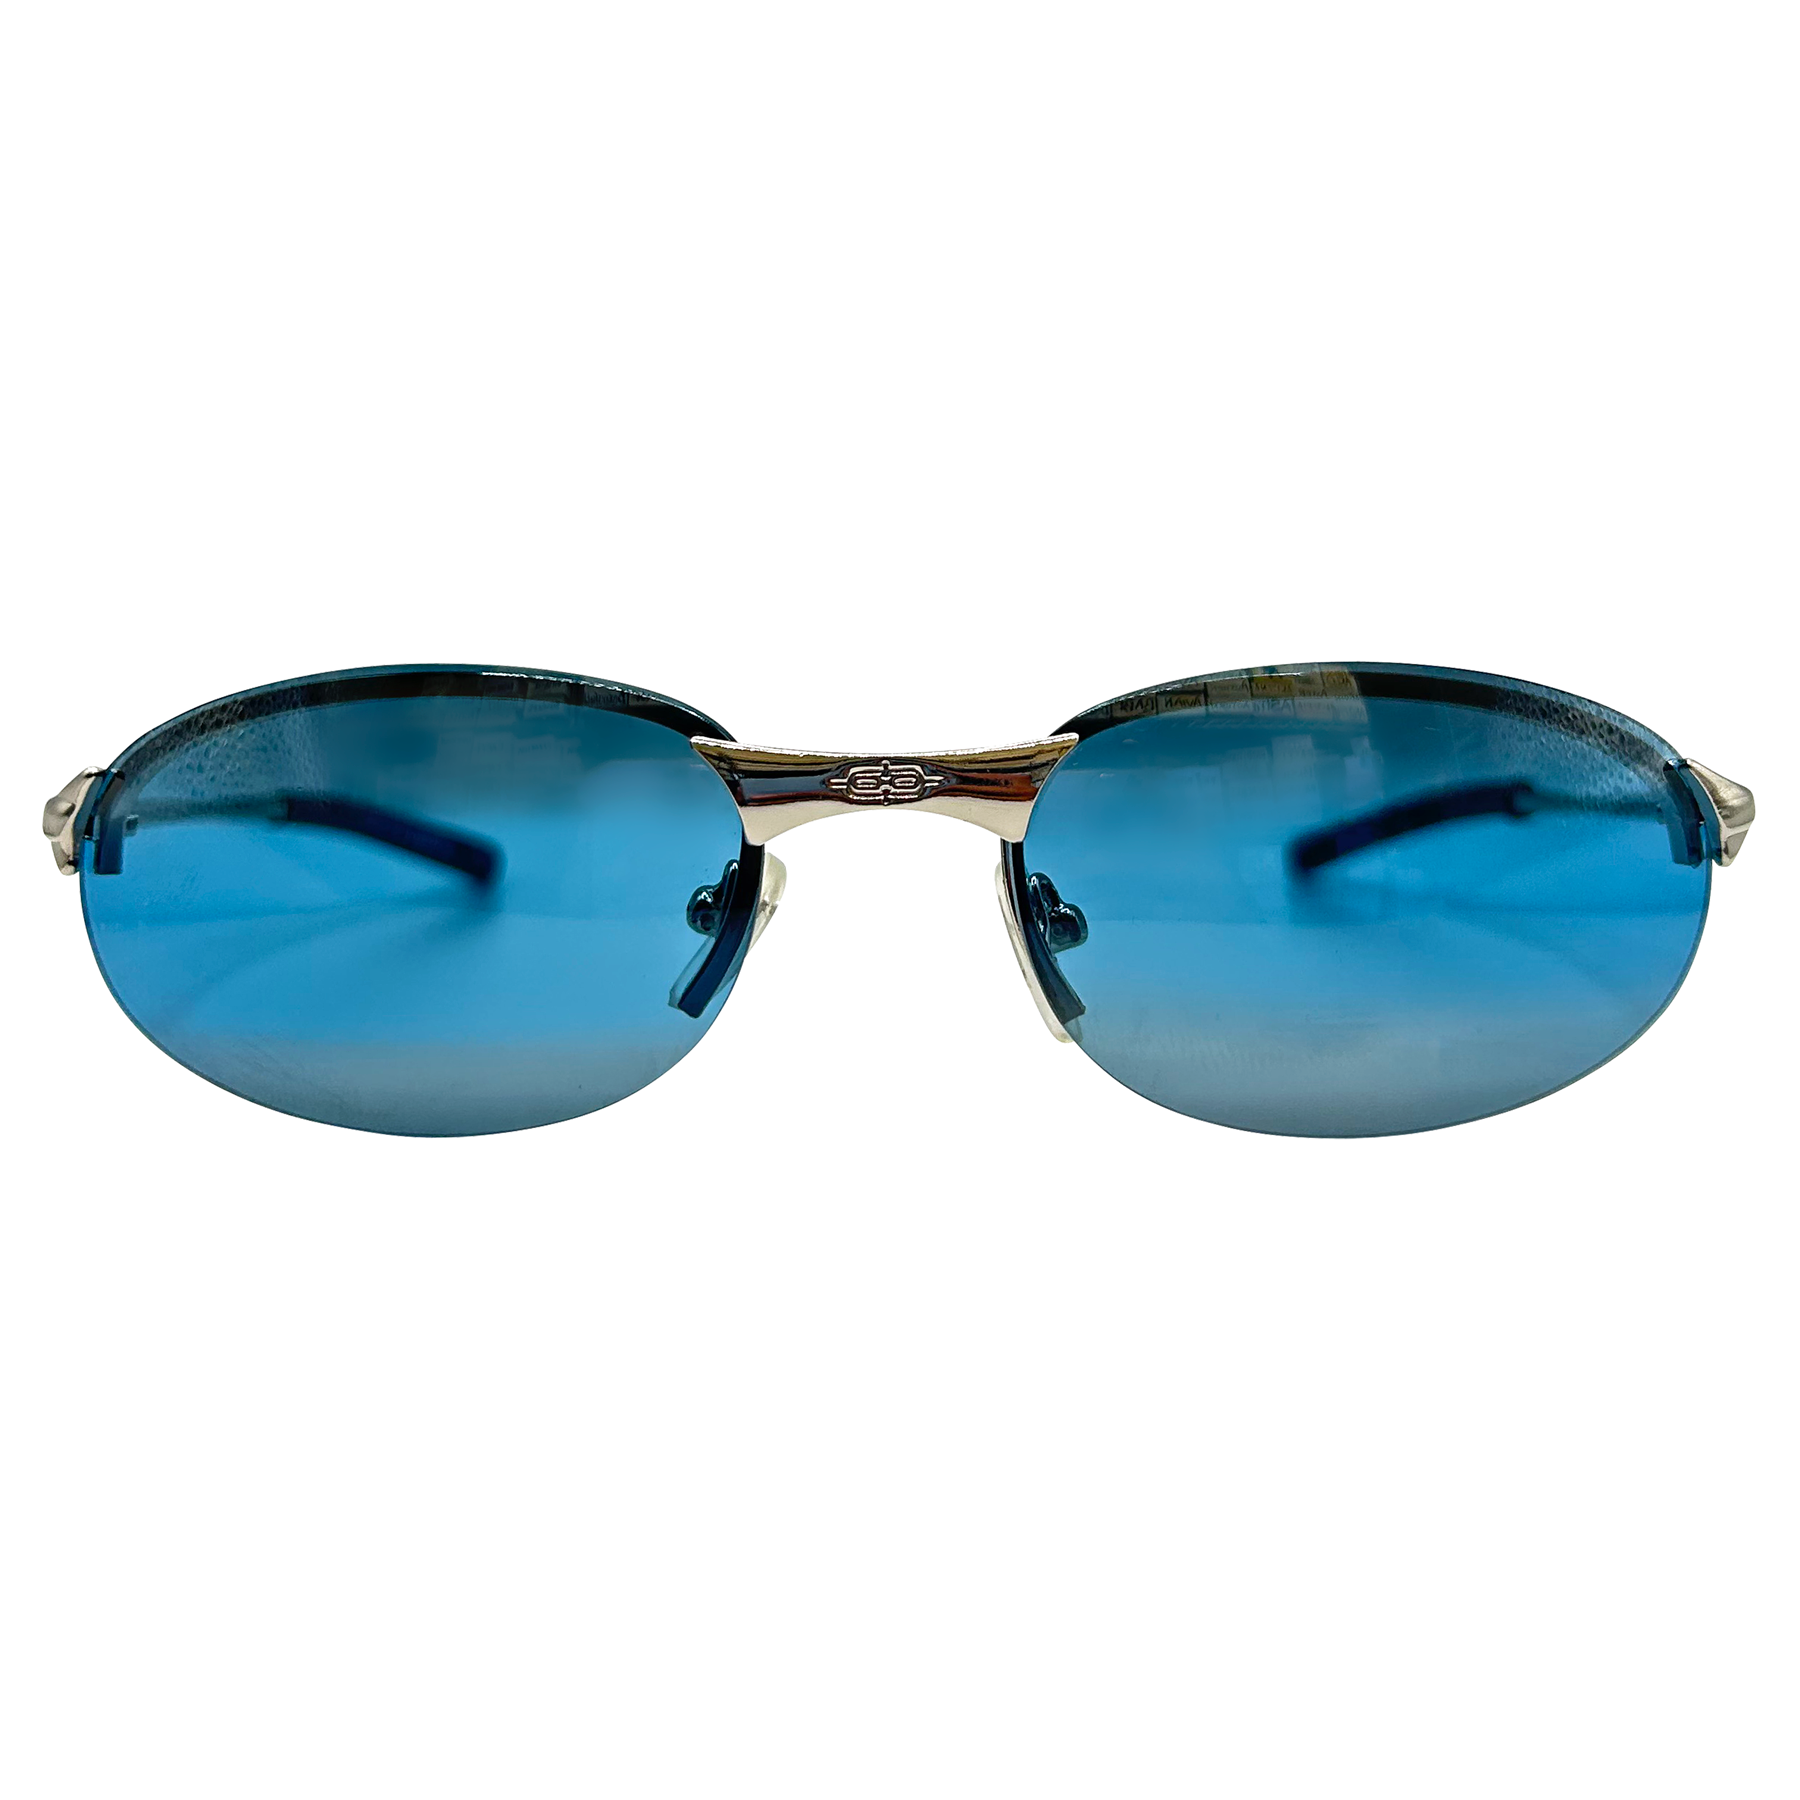 PENALTY 90s Streetwear Sunglasses